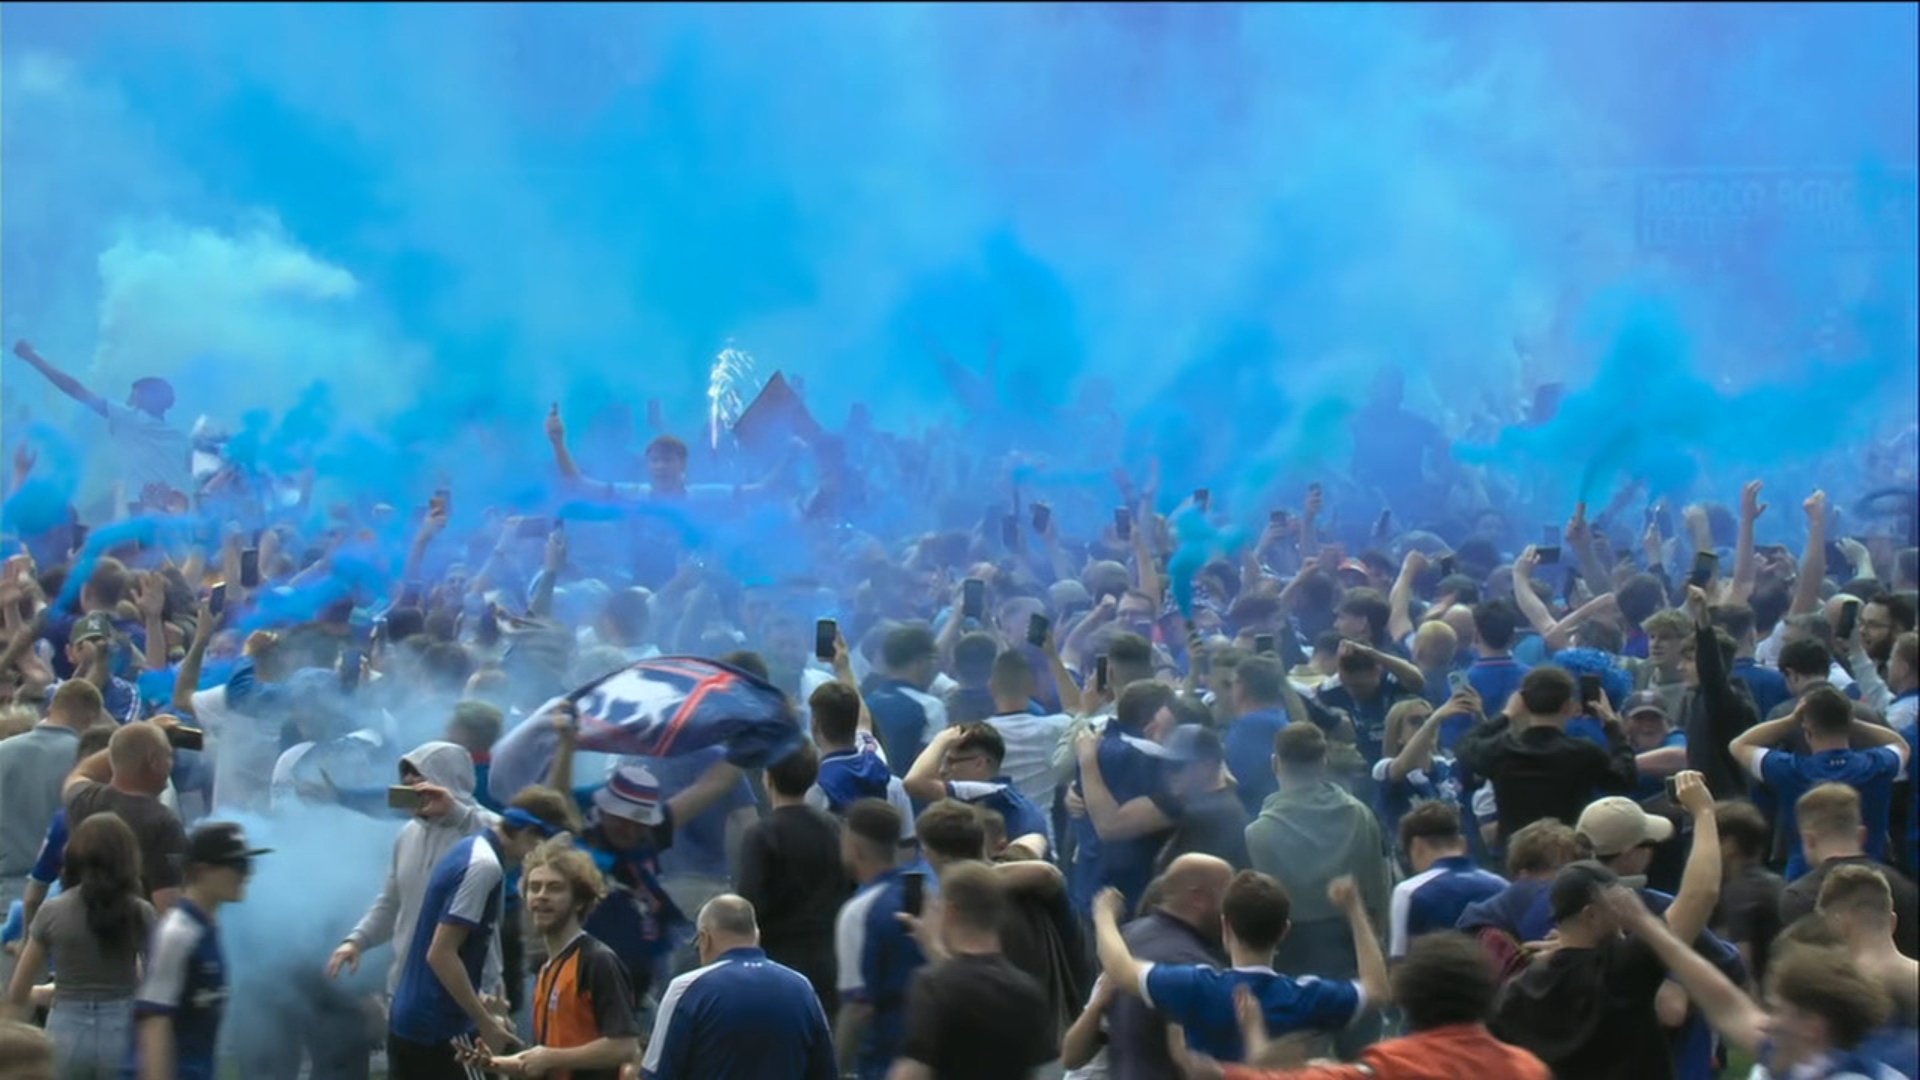 Ipswich fans storm the pitch to celebrate Premier League return